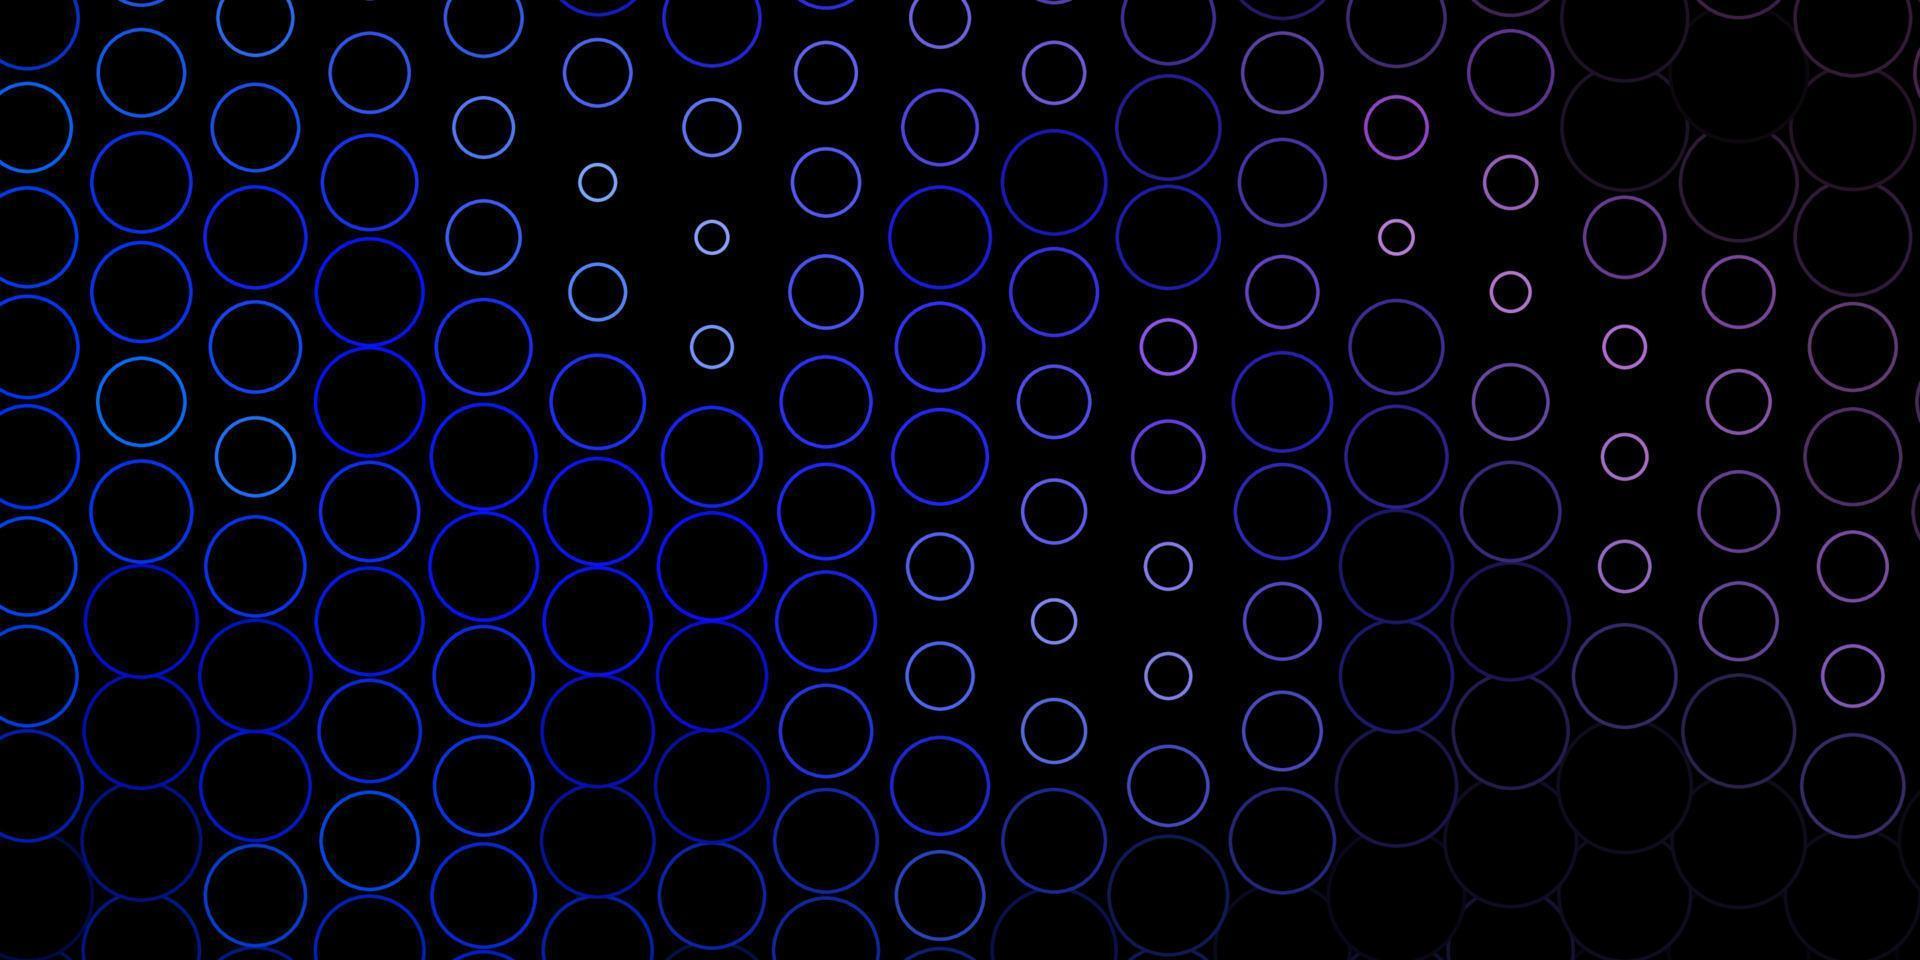 mörkrosa, blå vektorlayout med cirkelformer. vektor